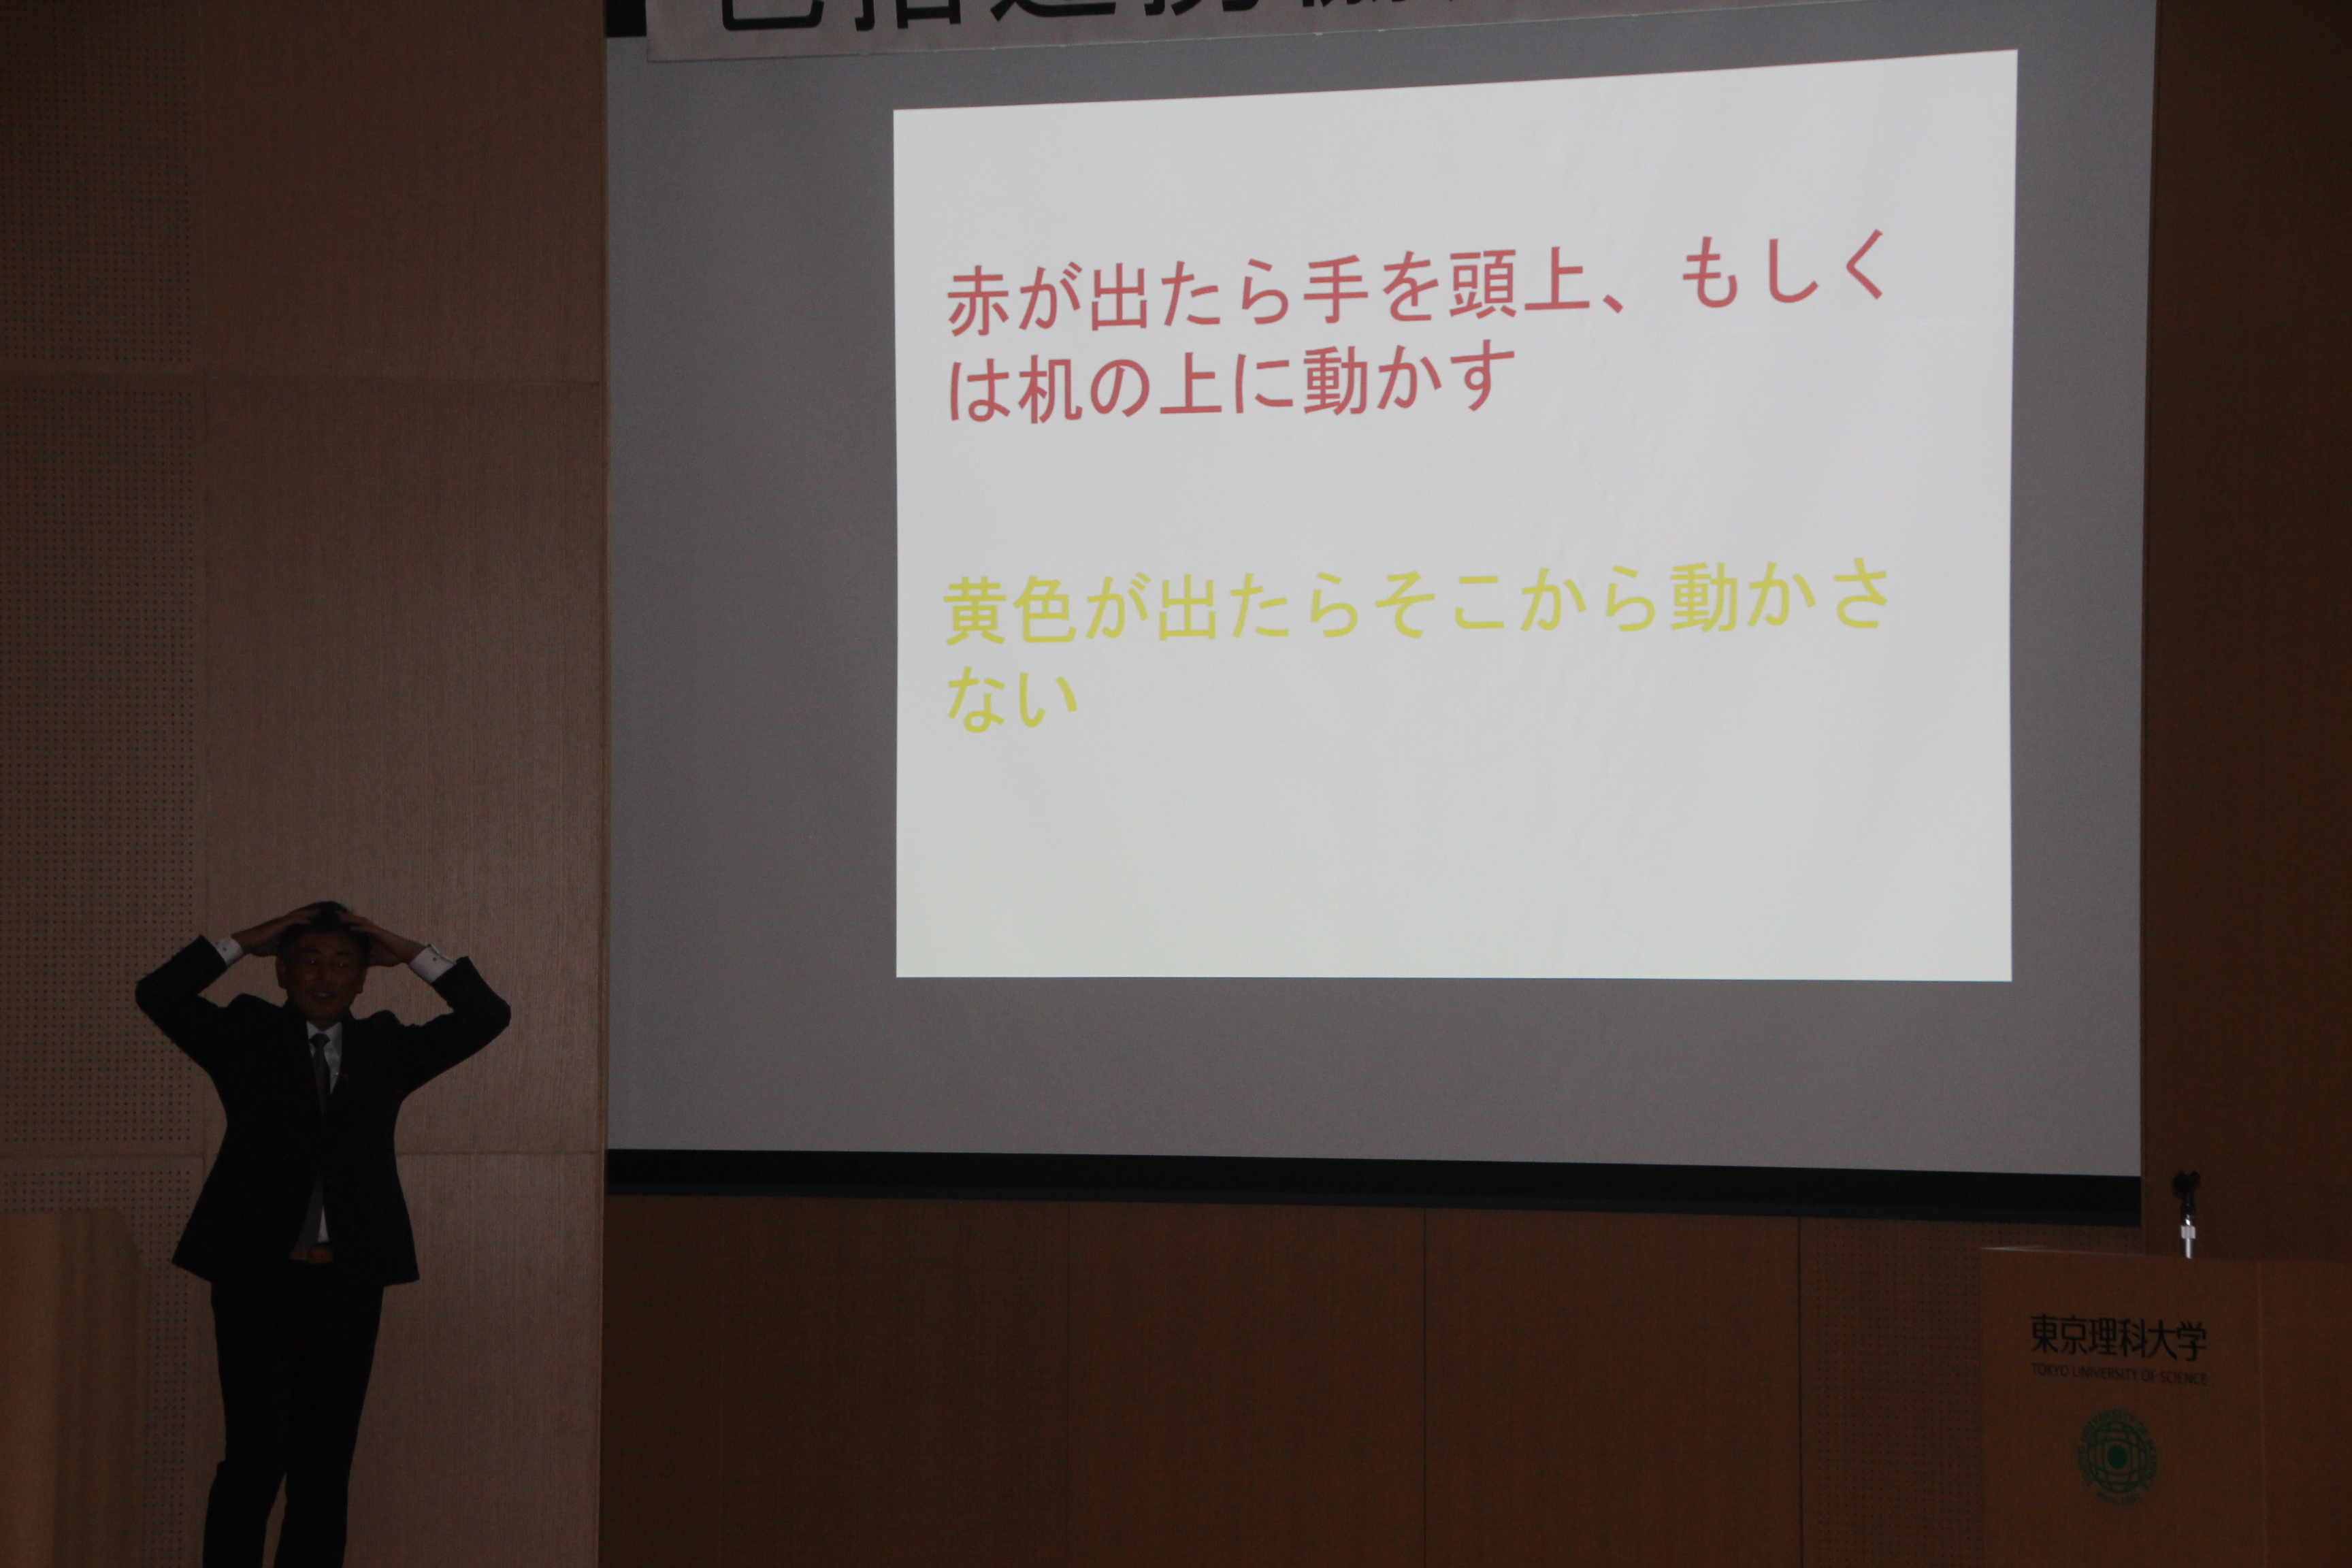 第5回 東京理科大学・野田市・流山市 包括連携協定講演会